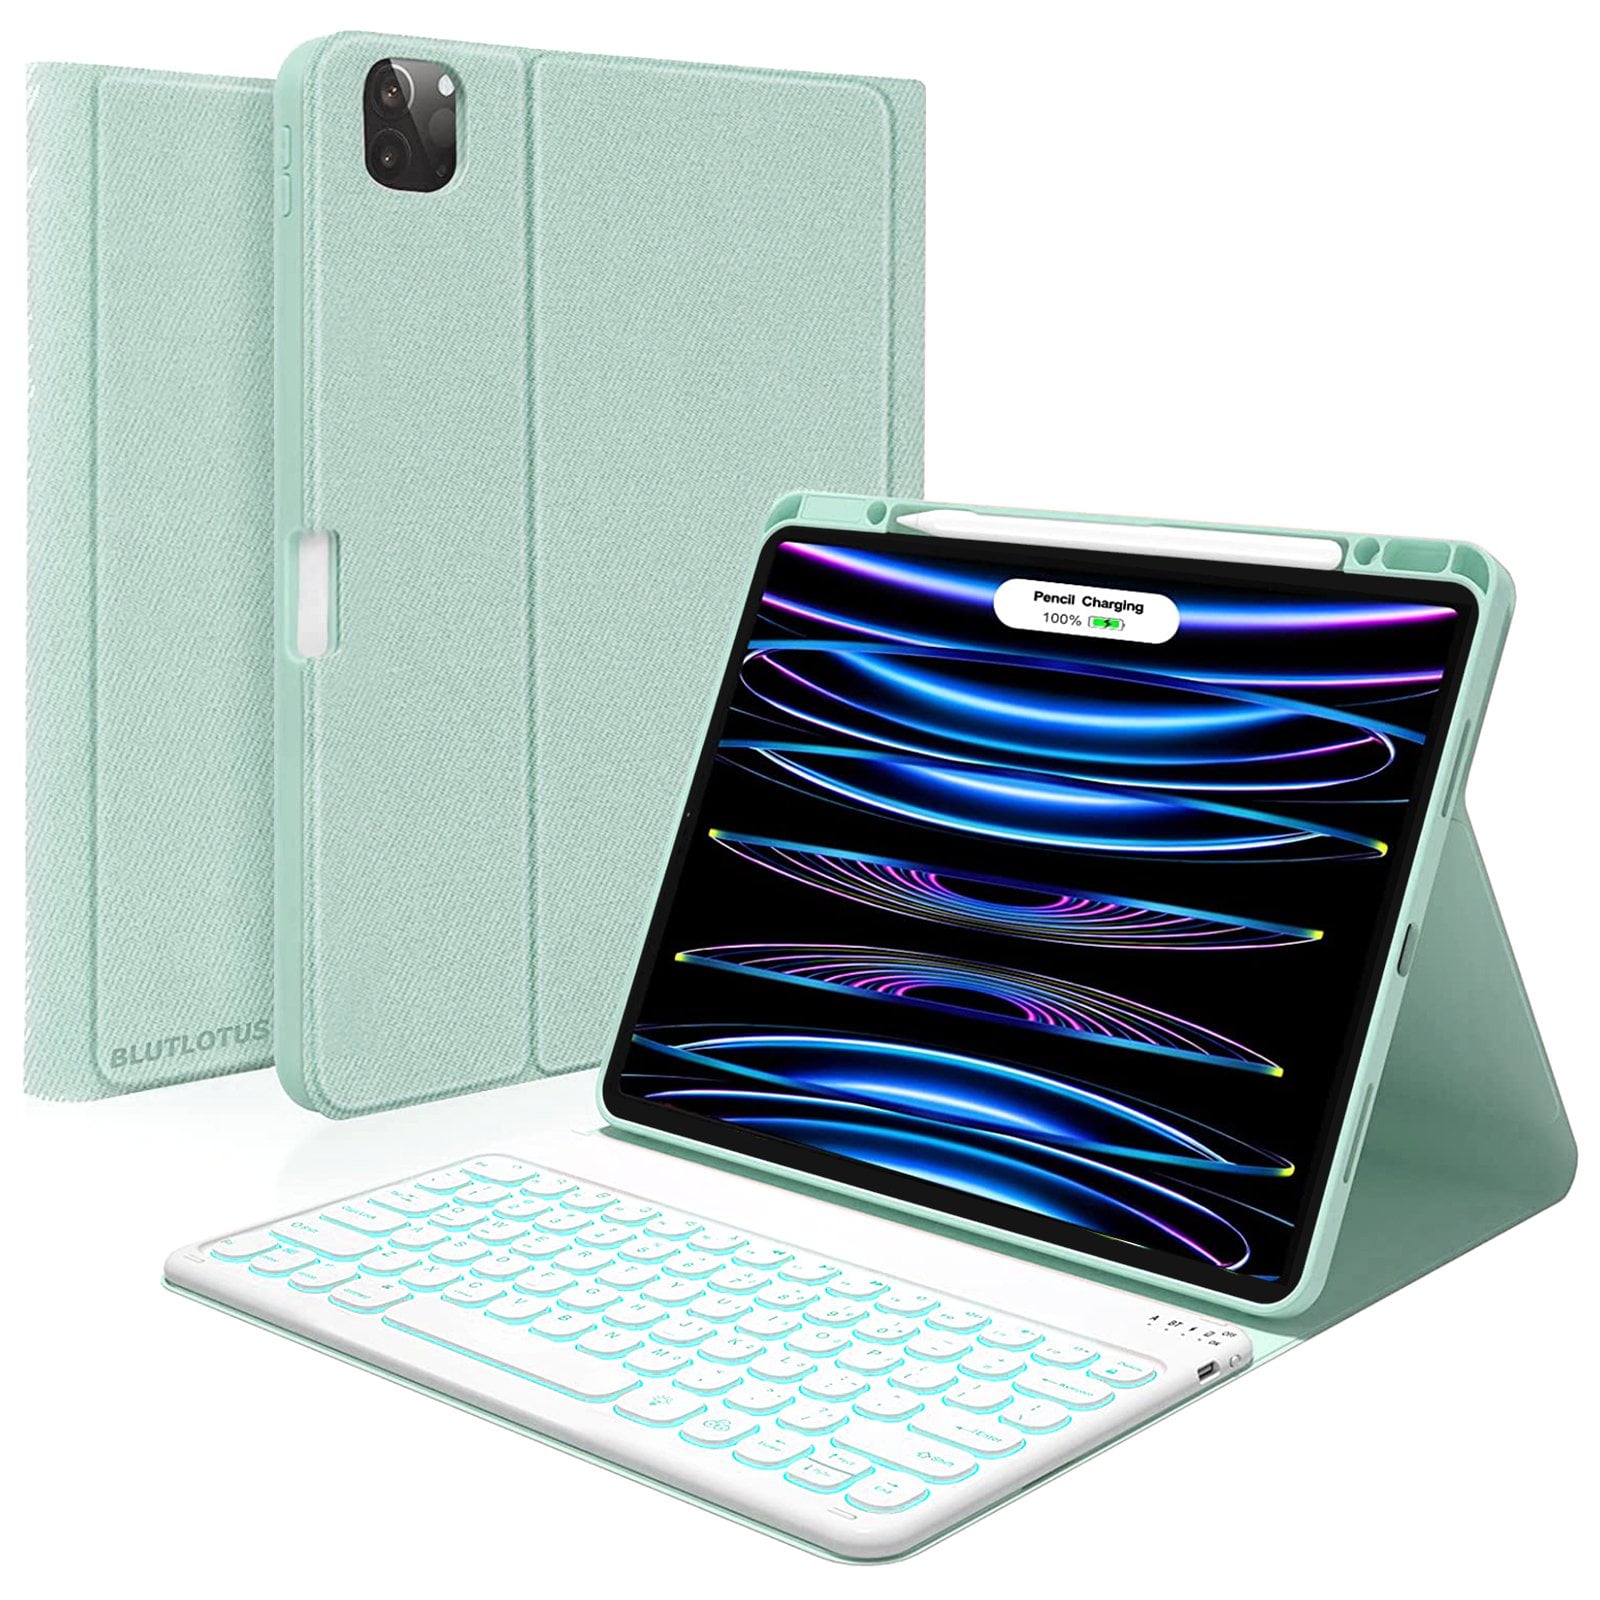 iPad 12.9 estuche con teclado – Intelcompus